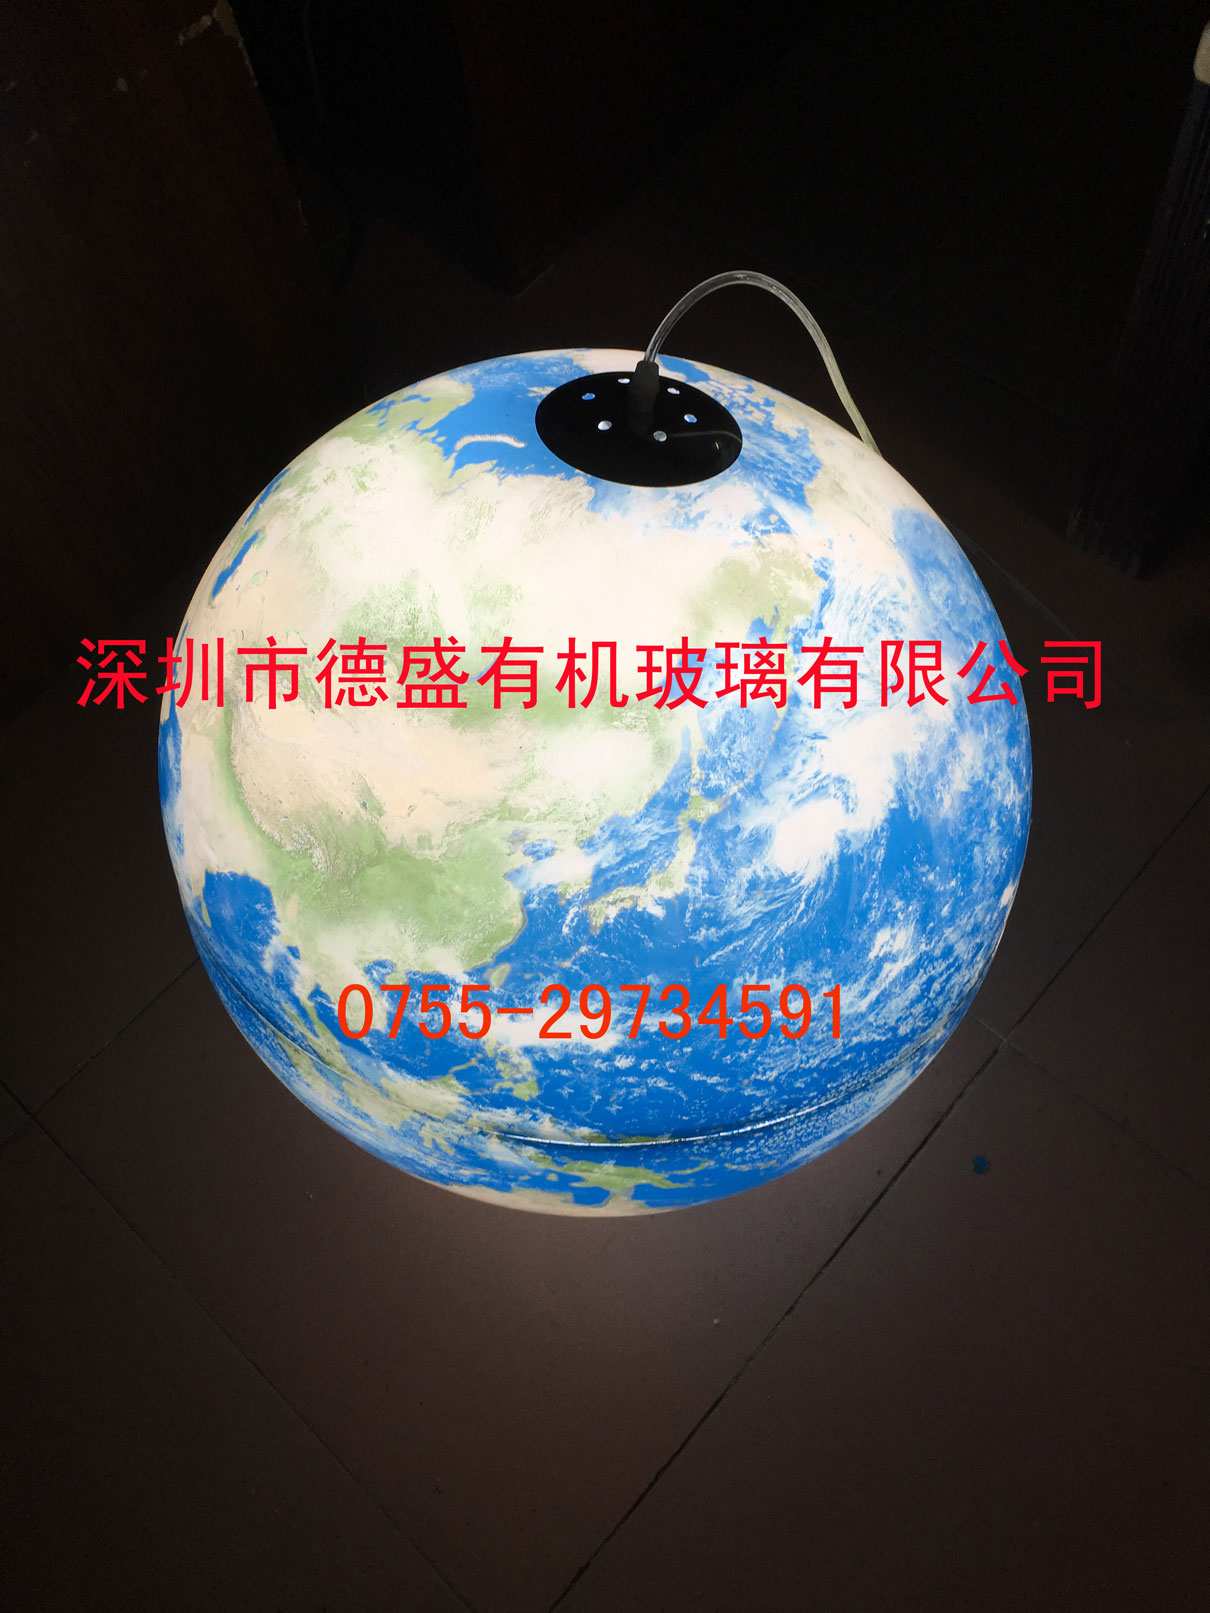 星球制作 亚克力九大行星加工 创意星球灯罩摆件展架